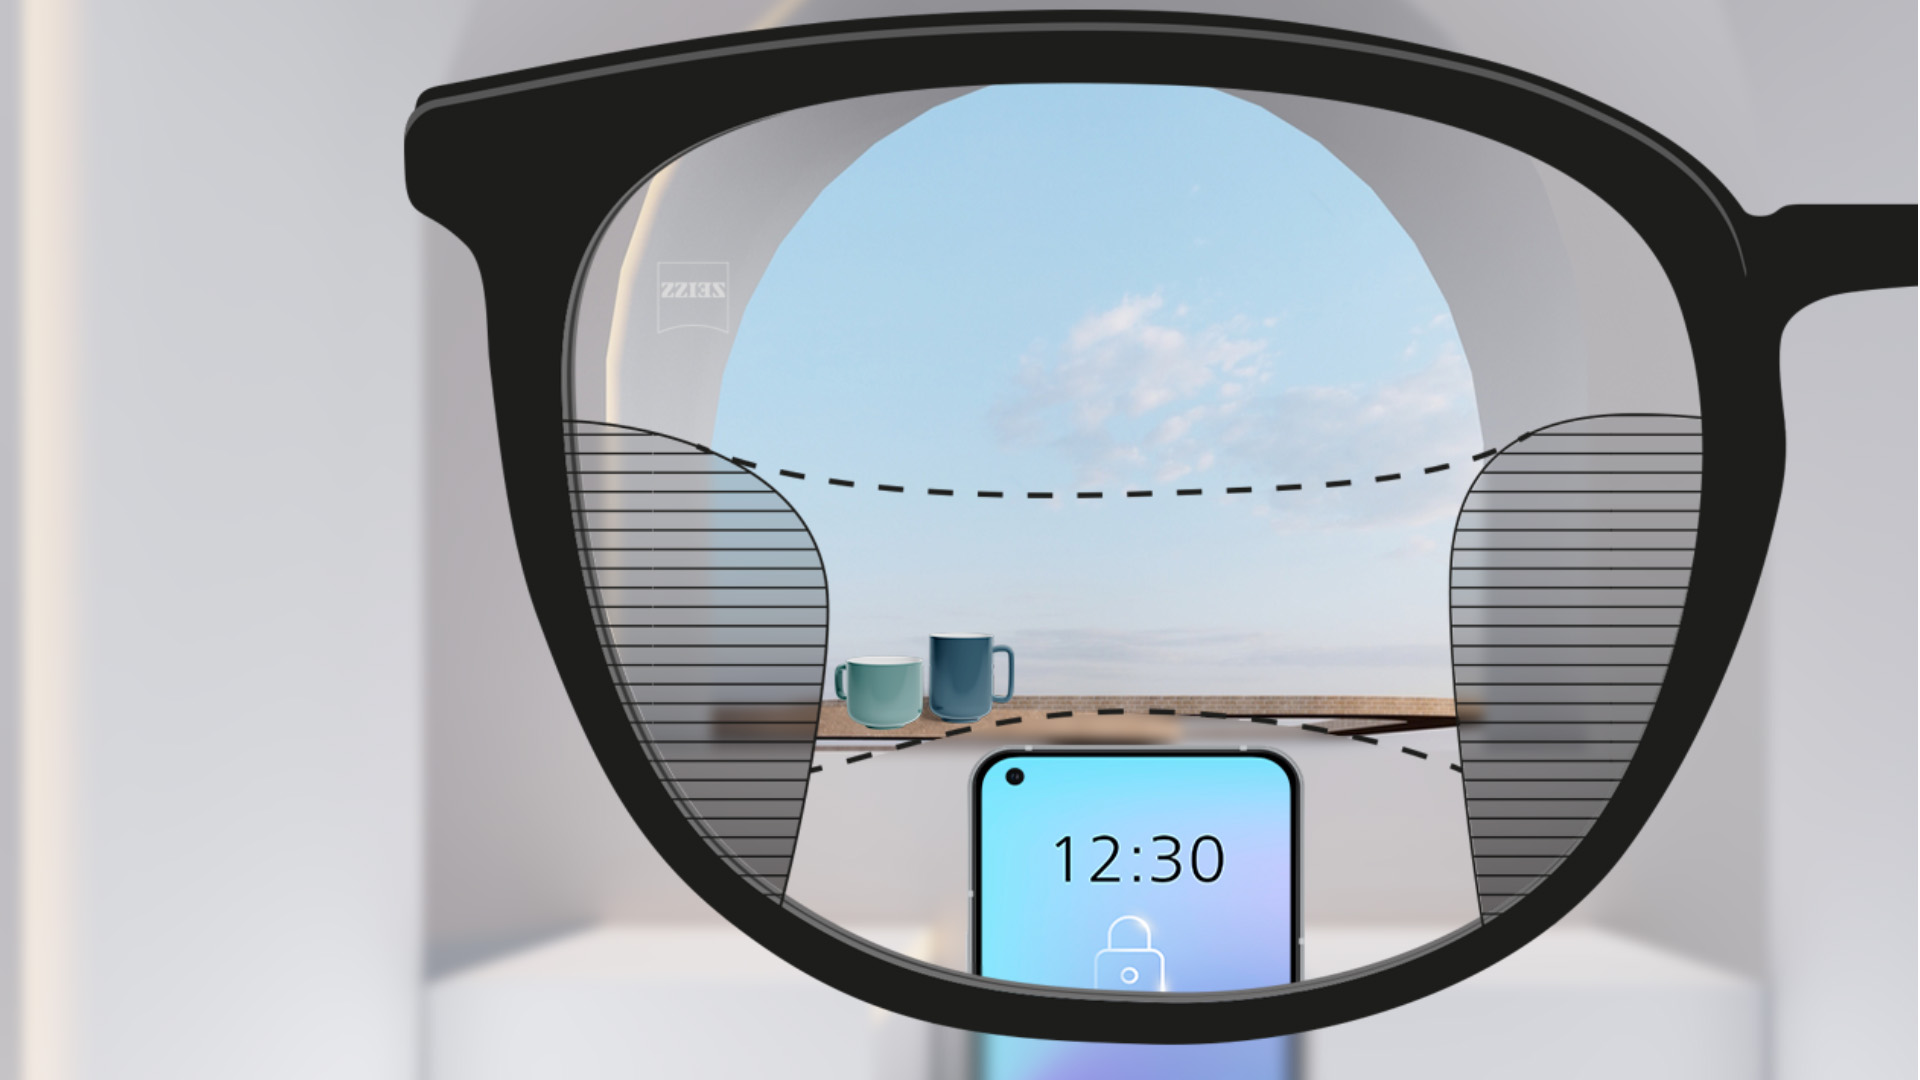 Et synsvinkelbilde med ZEISS progressive SmartLife-glass med en smarttelefon og kopper i bakgrunnen mens glasset er helt klart med slanke uskarpe plott til venstre og høyre.